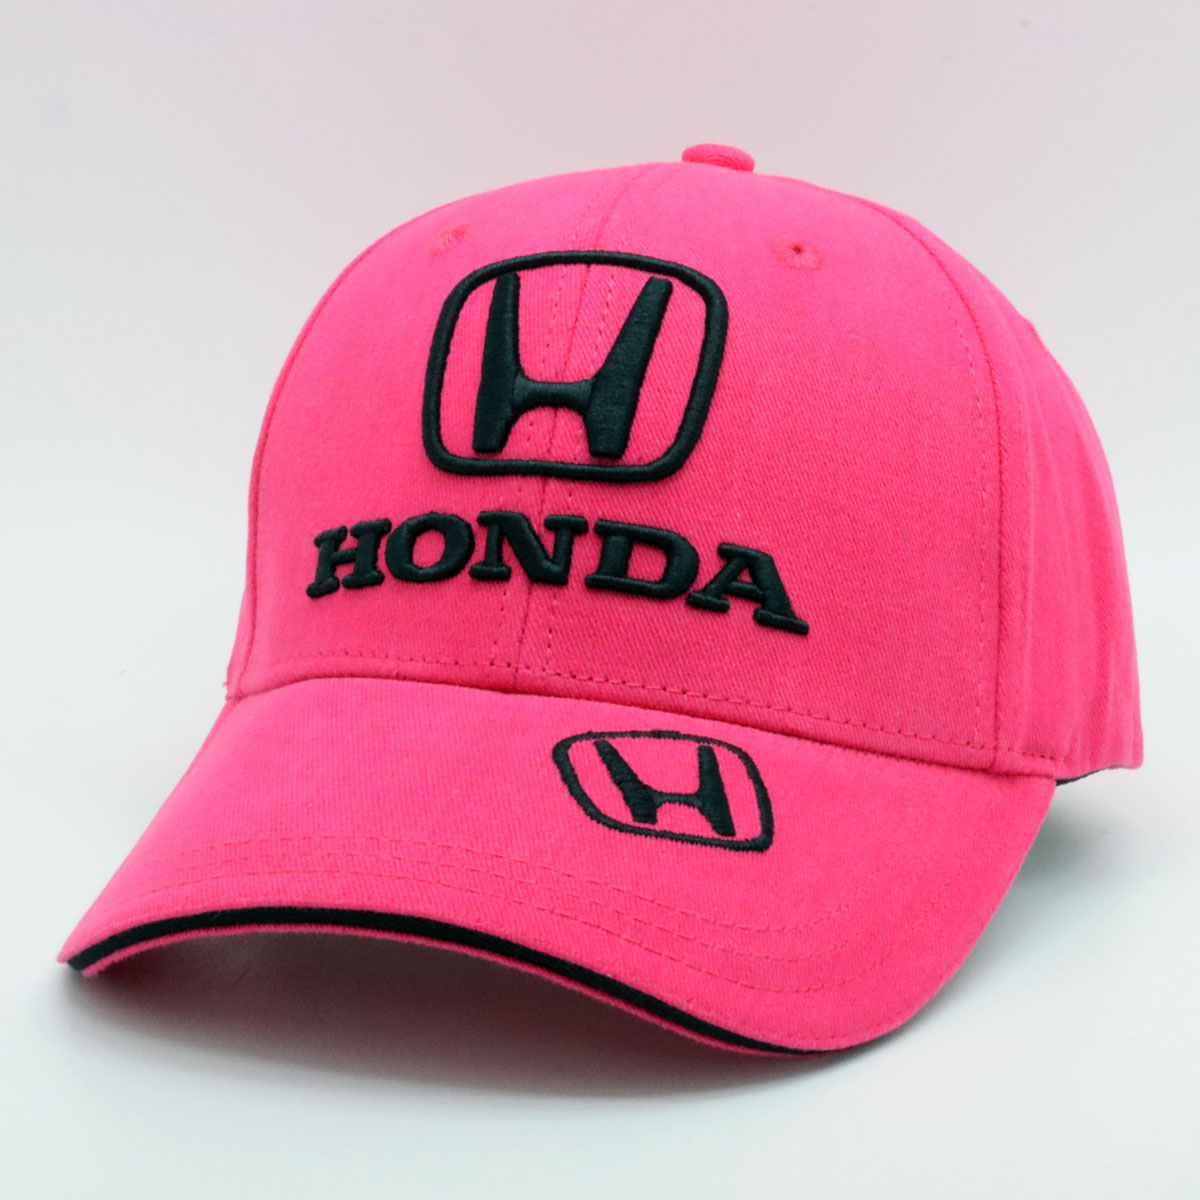 US限定 HONDA ホンダ クラシック ロゴ ベースボール キャップ ピンク画像